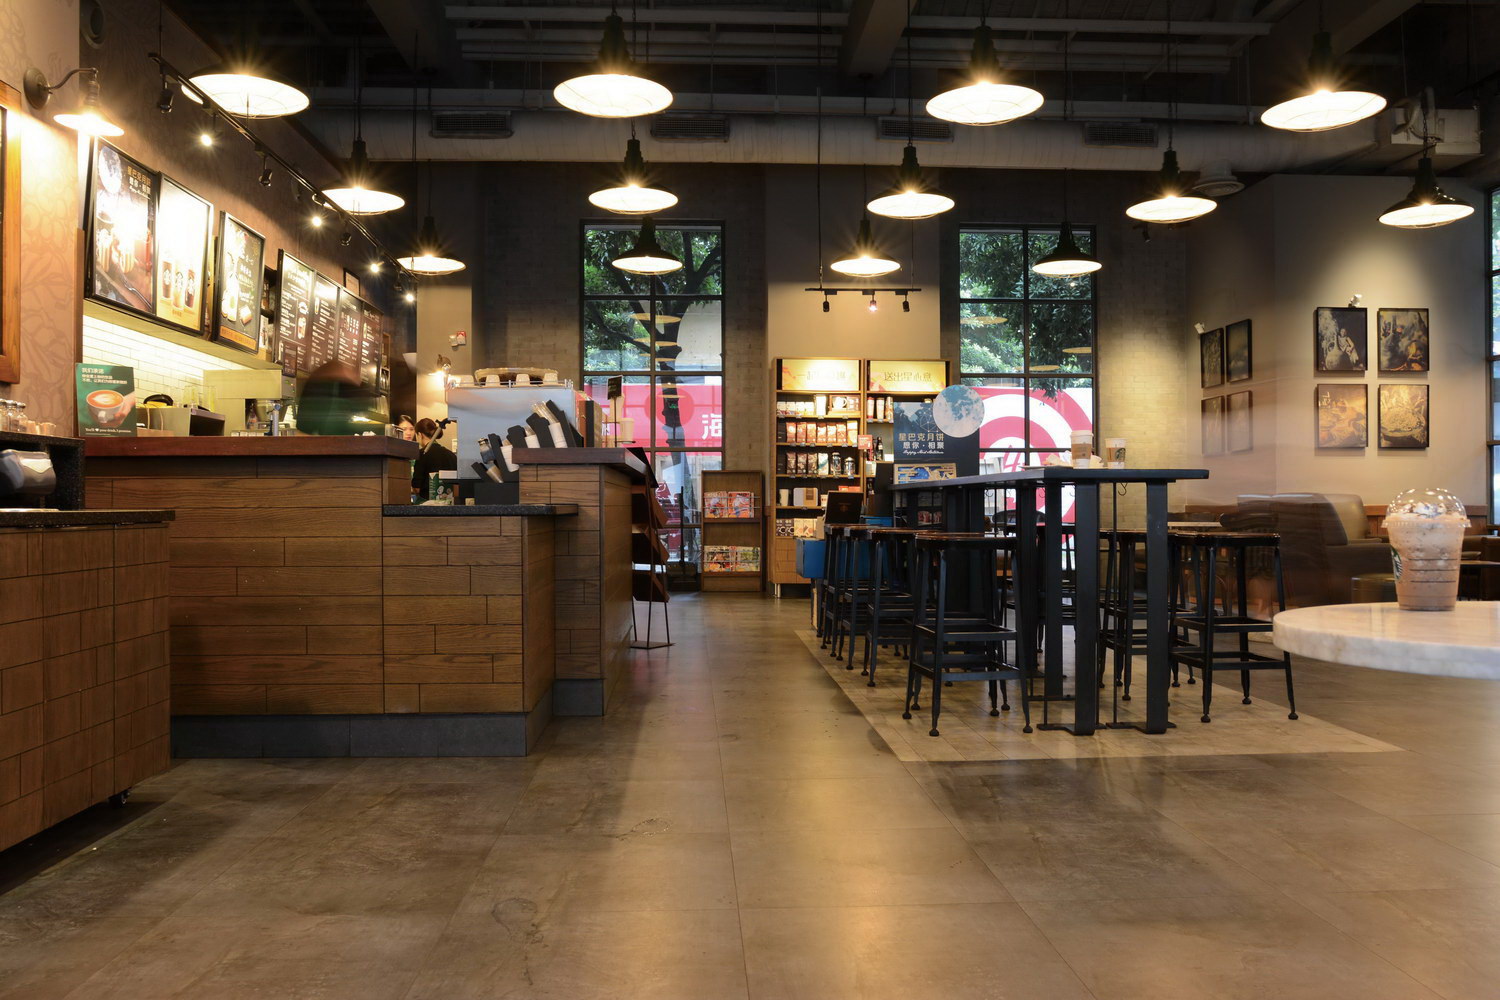 China丨Starbucks Coffee Chain Store丨Starbucks in Foshan, Guangdong